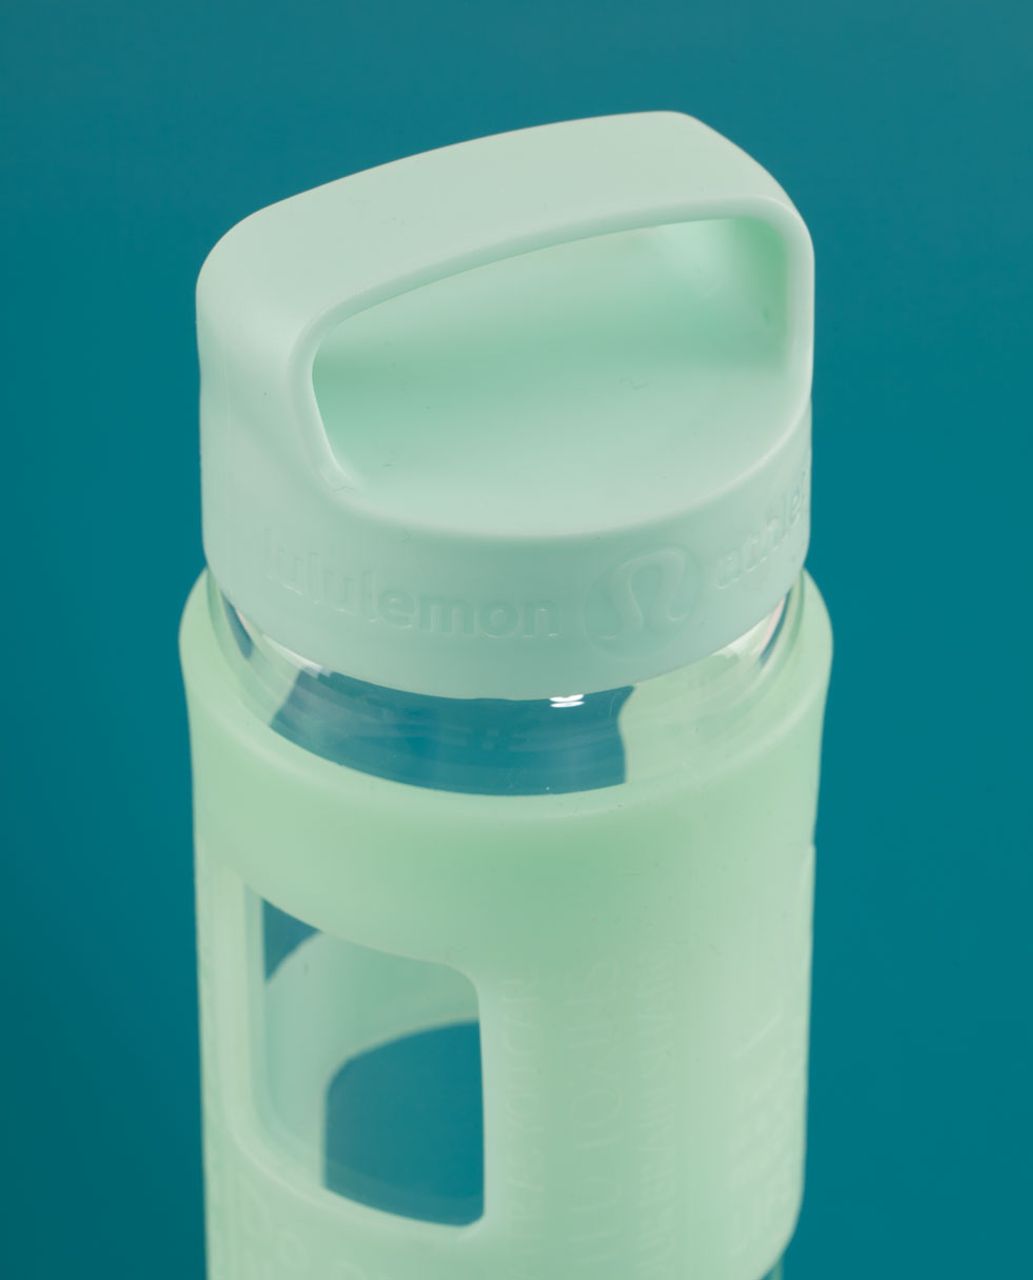 Lululemon Pure Balance Water Bottle - Mint Moment